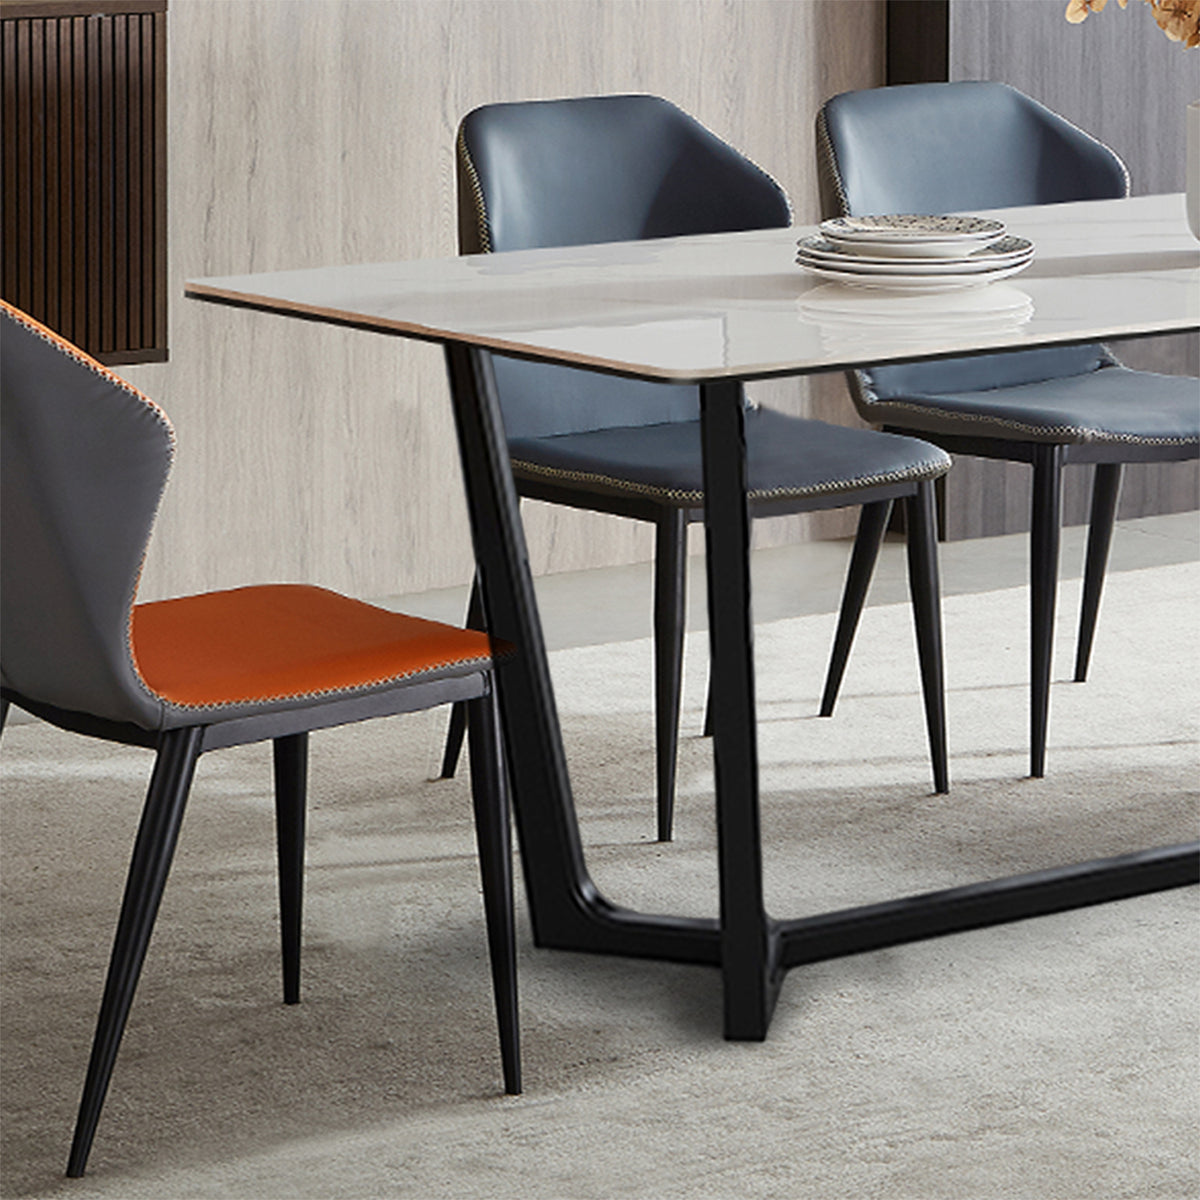 （限量現貨搶購中）TORROX 複合岩板餐桌, M型腳座, 180*90 公分, 馬肚形